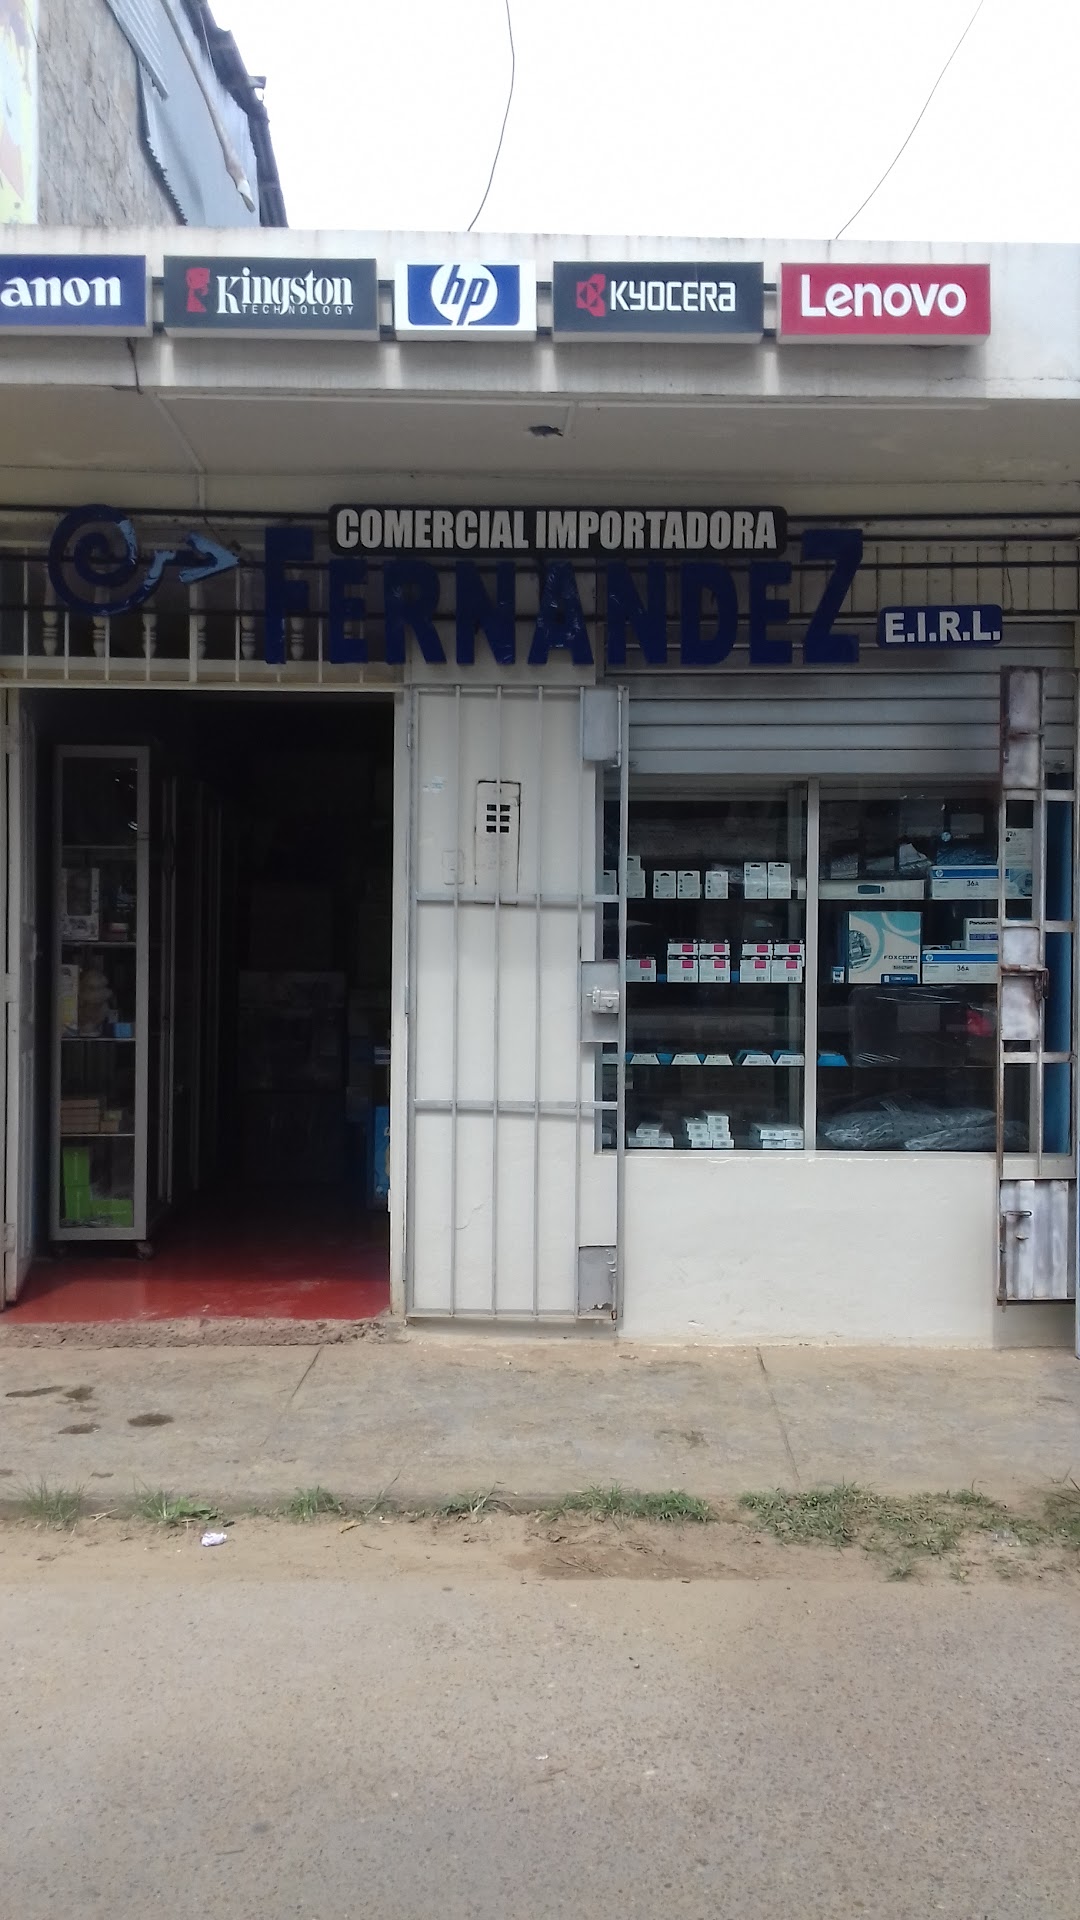 Comercial. Imp. Distrib. Fernandez E.I.R.L